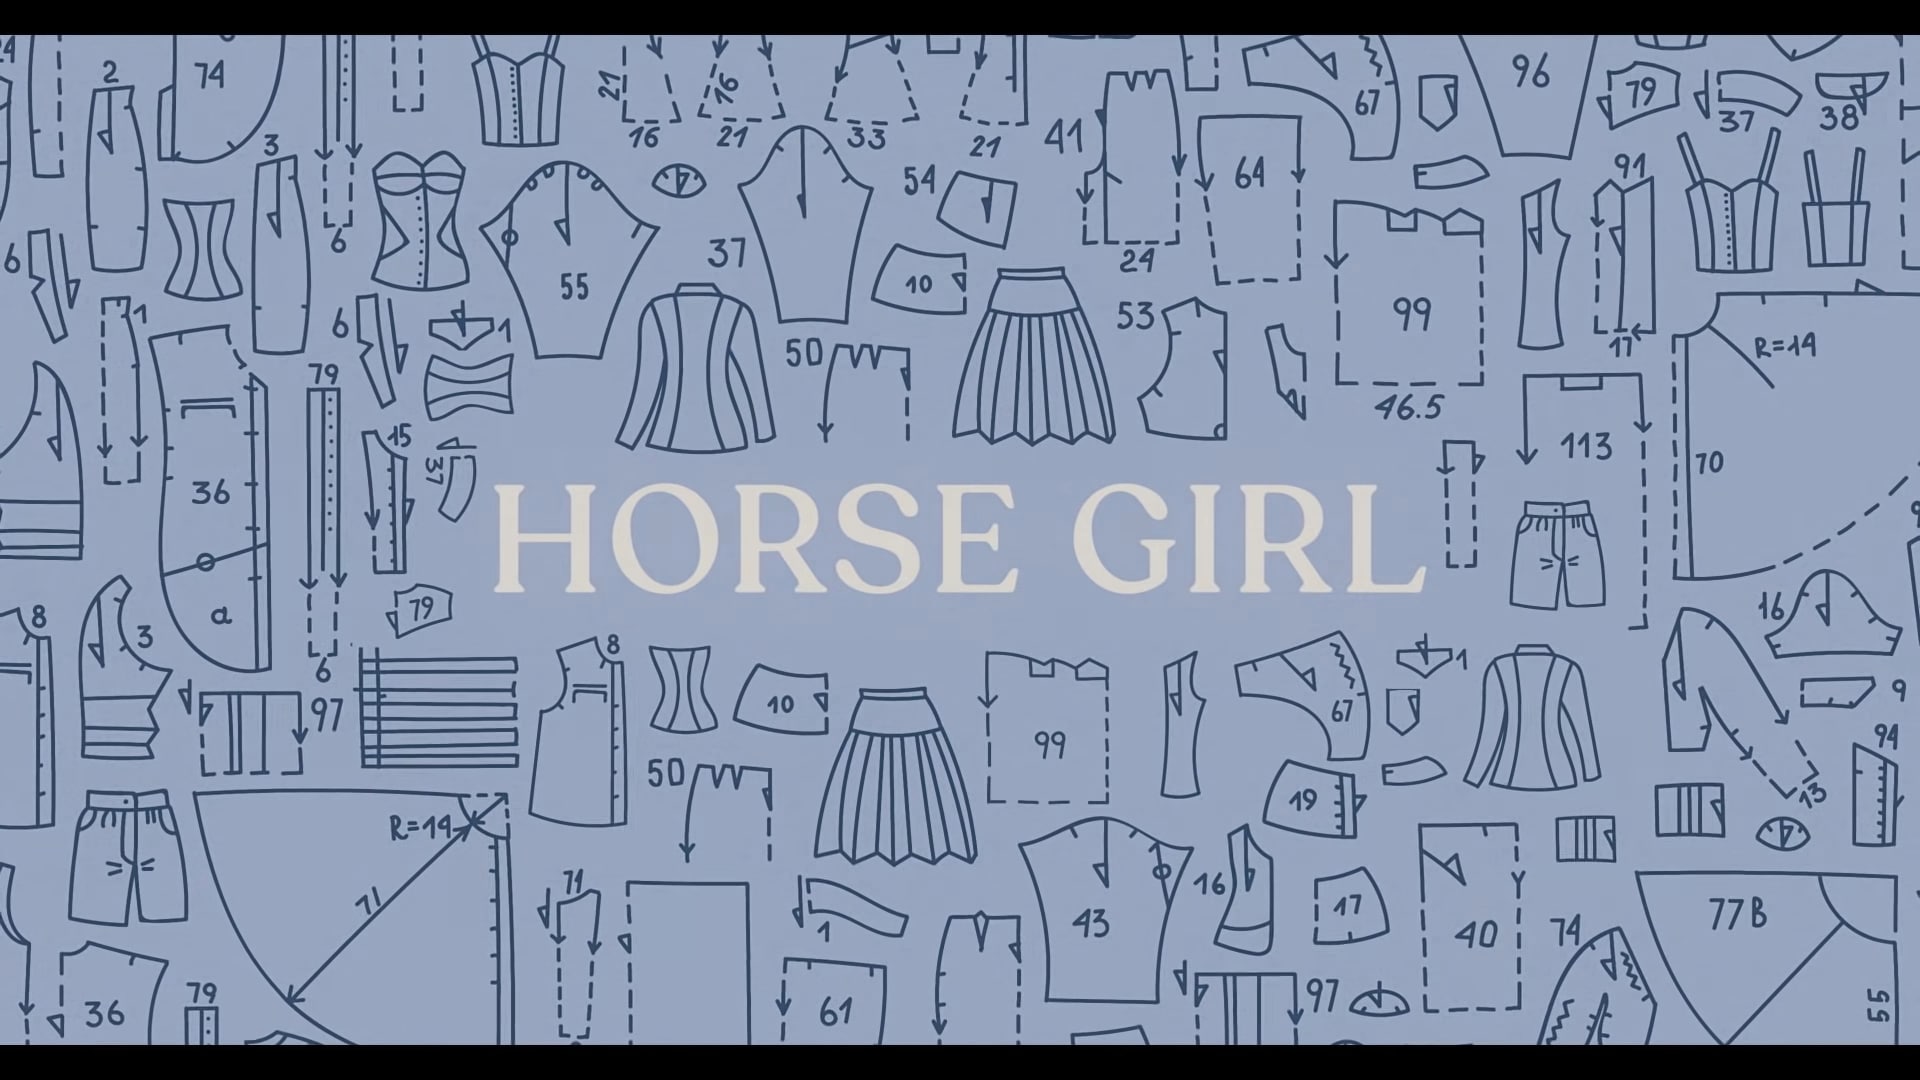 Horse Girl Netflix Trailer, Netflix Short Movies, Netflix Comedy Movies, Netflix Drama Movies, Coming to Netflix in February 2020